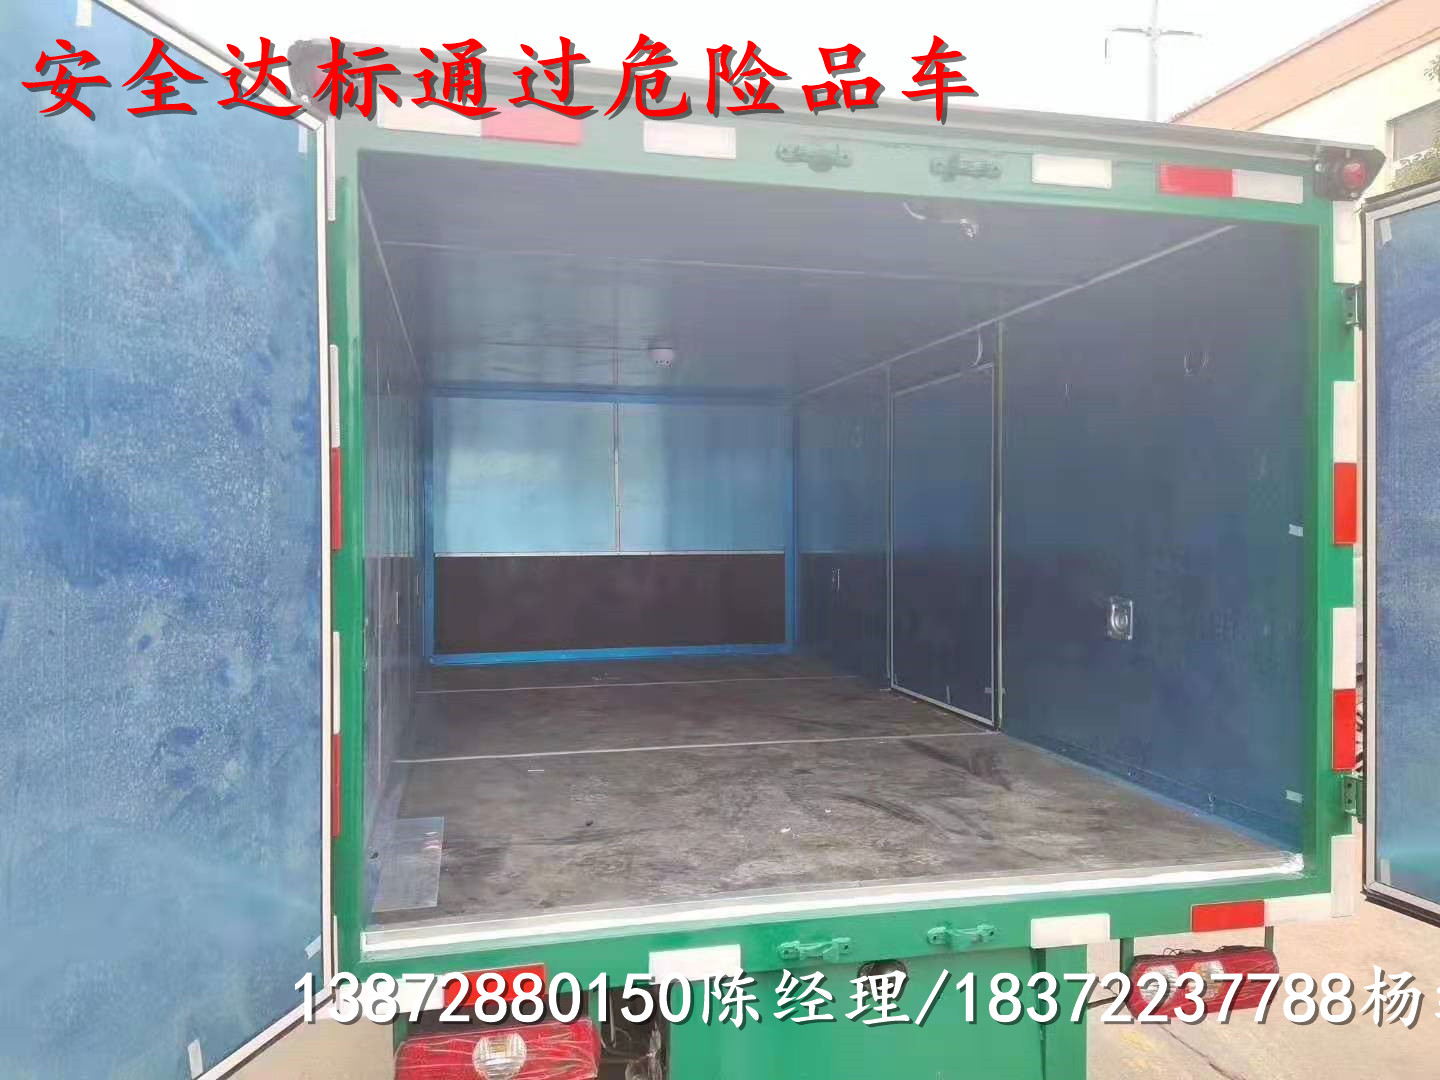 陕西榆林解放JH6四桥(8X4)厢式运输车销售网点价格